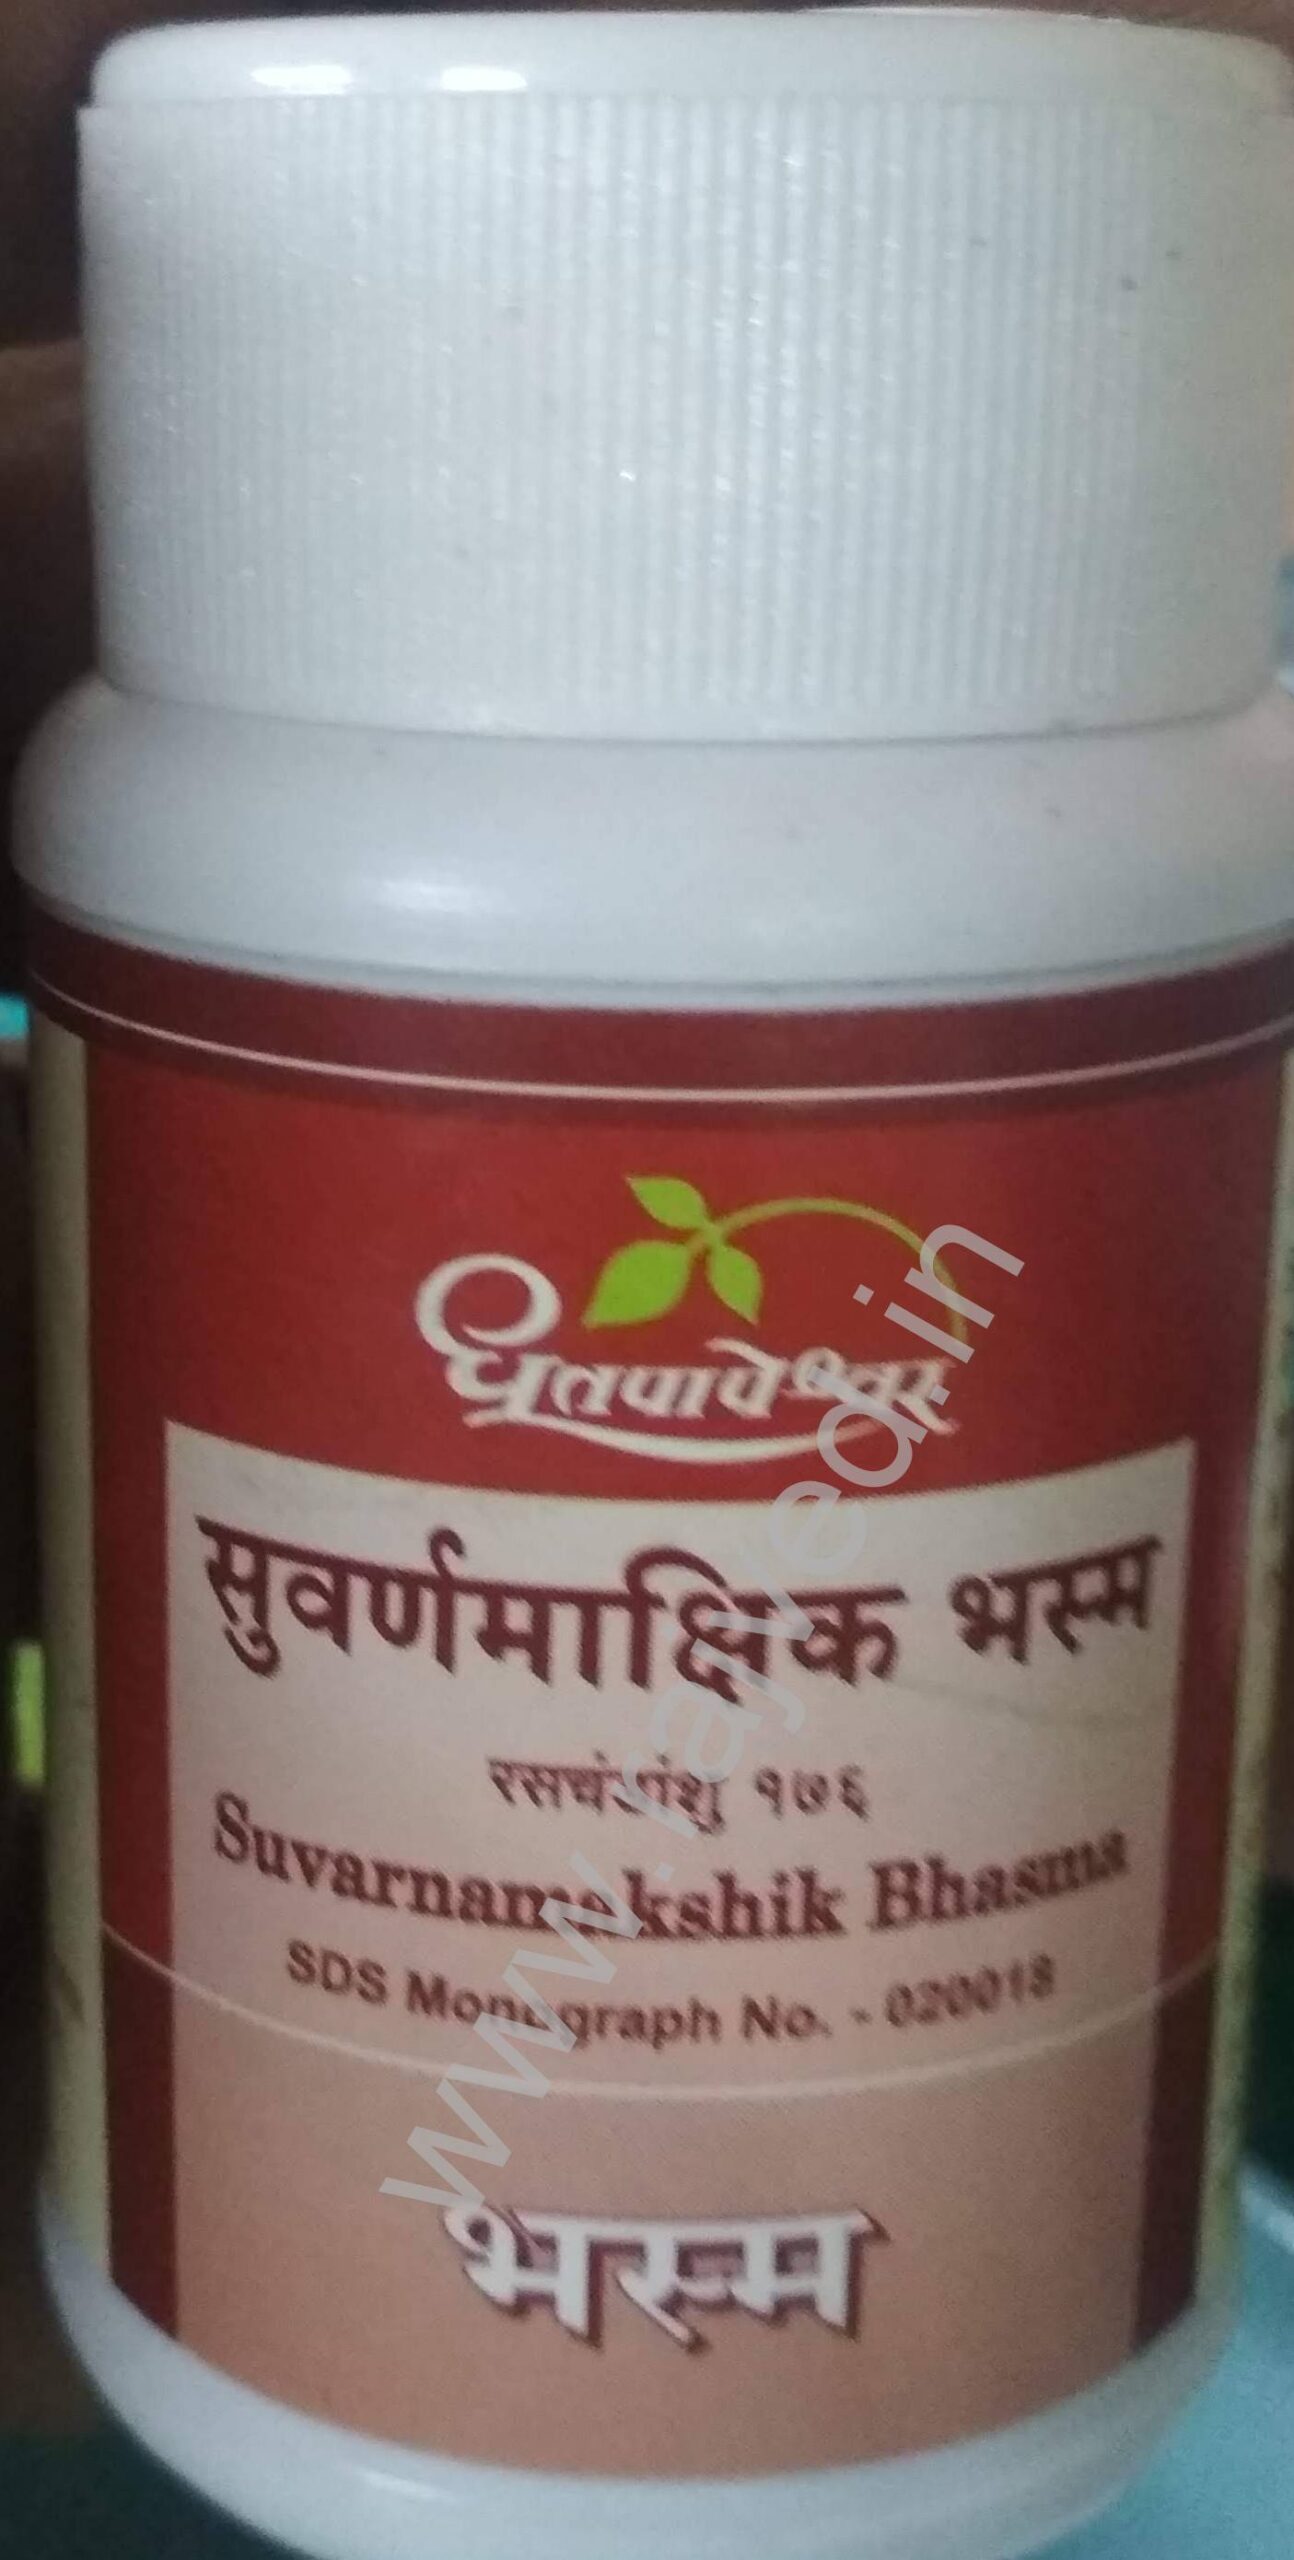 suvarnamakshik bhasma 10 gm upto 20% off shree dhootpapeshwar panvel